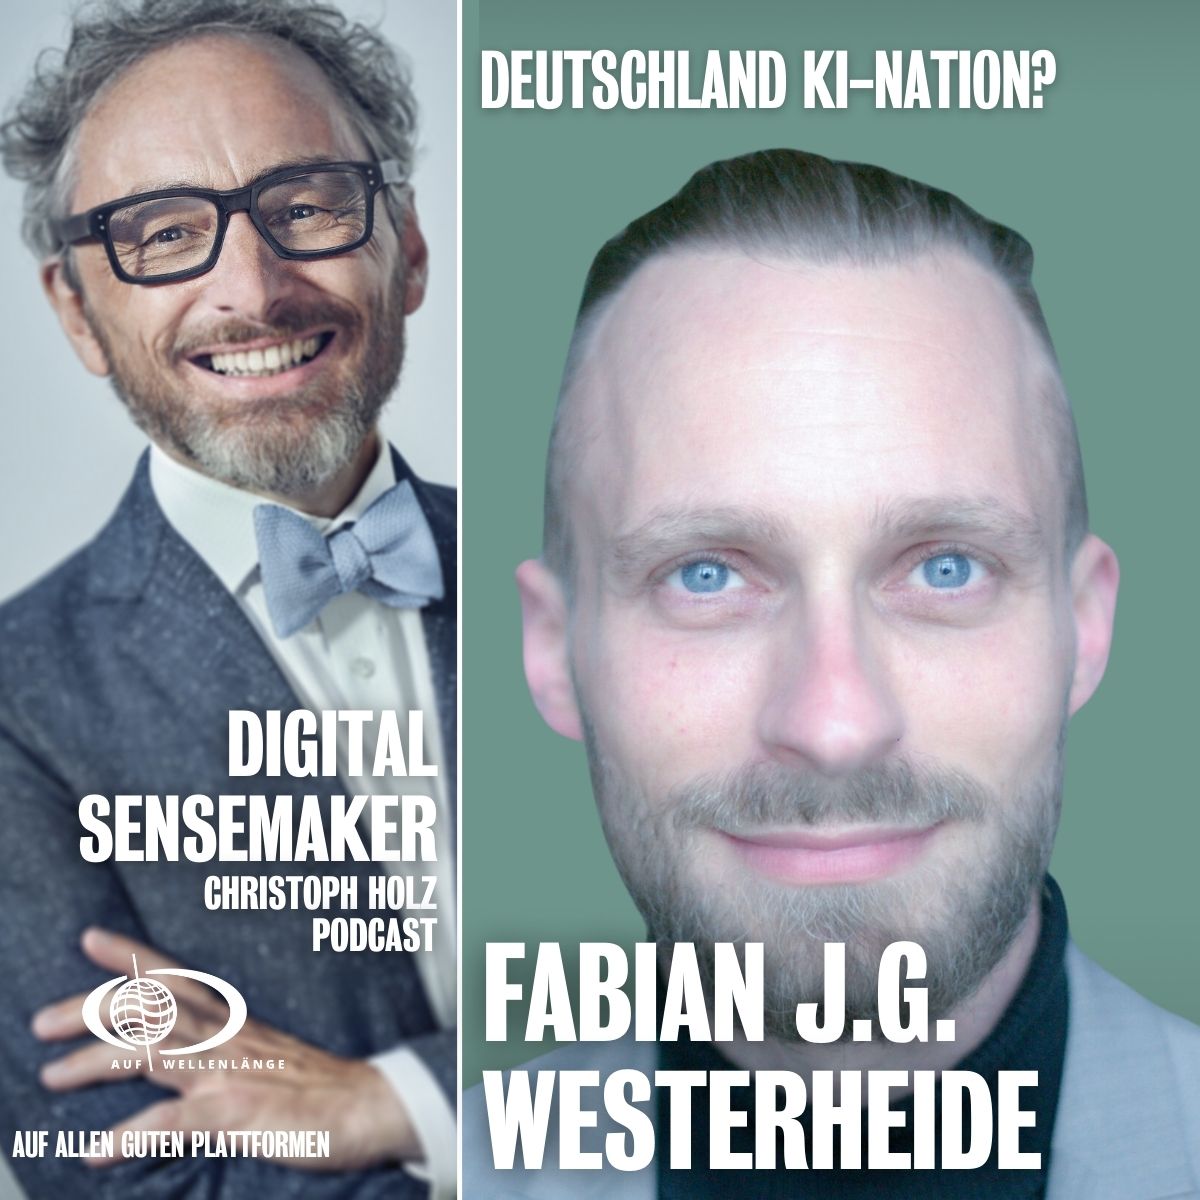 #130 “Deutschland KI-Nation?” mit Fabian J.G. Westerheide, CEO & Founder von Rise of AI